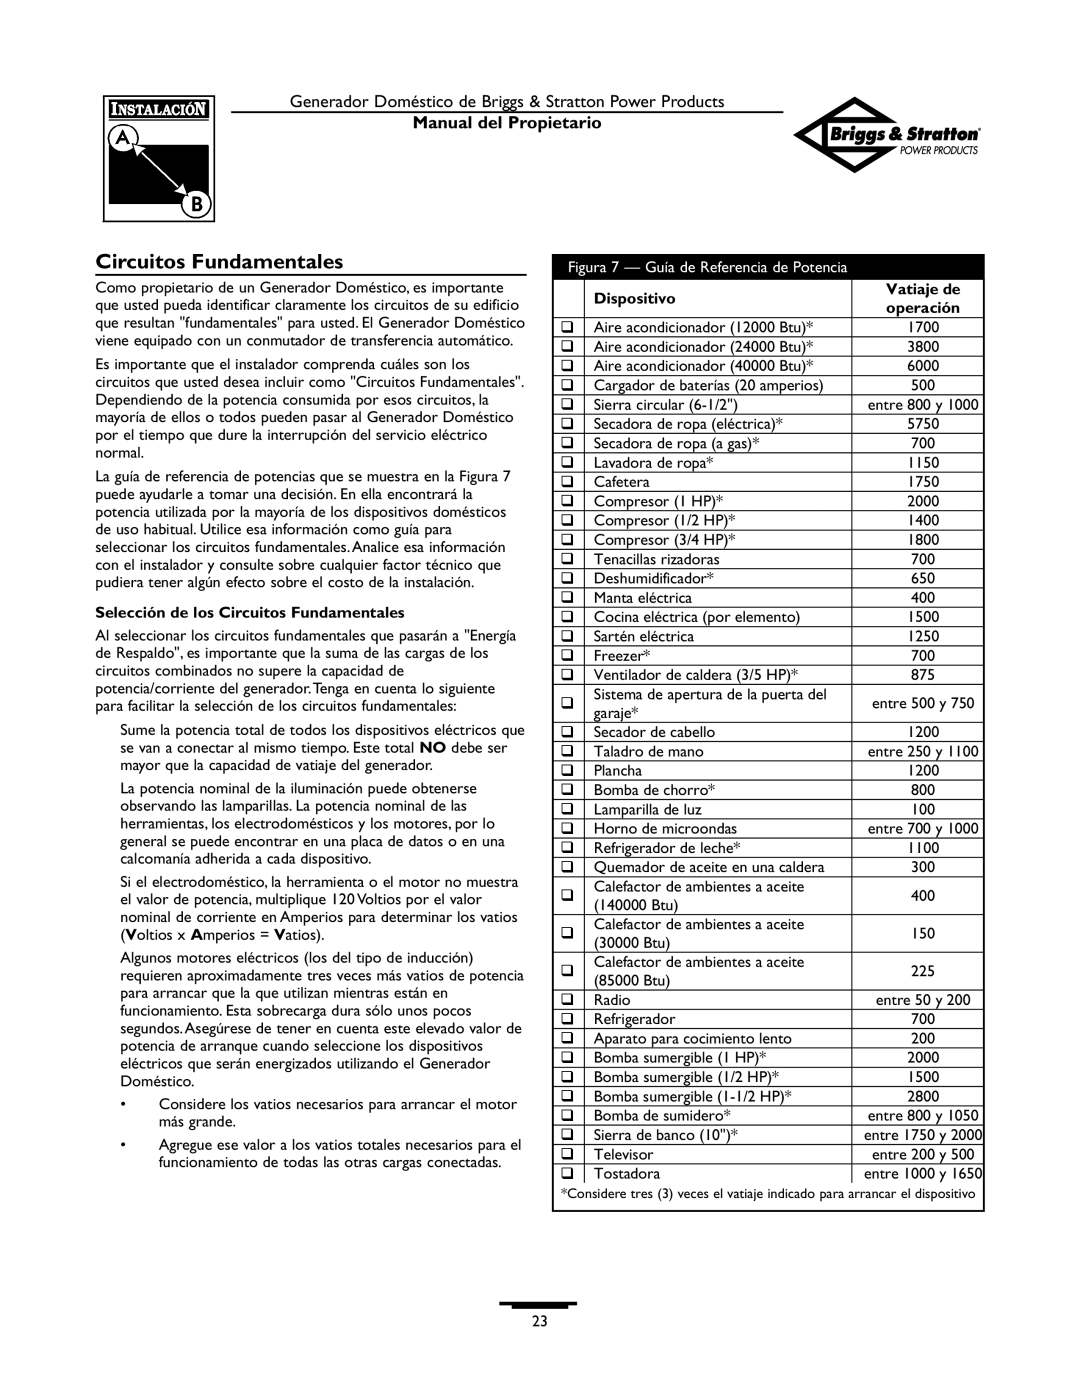 Briggs & Stratton 12KW, 10KW Manual del Propietario, Selección de los Circuitos Fundamentales, Dispositivo, Vatiaje de 